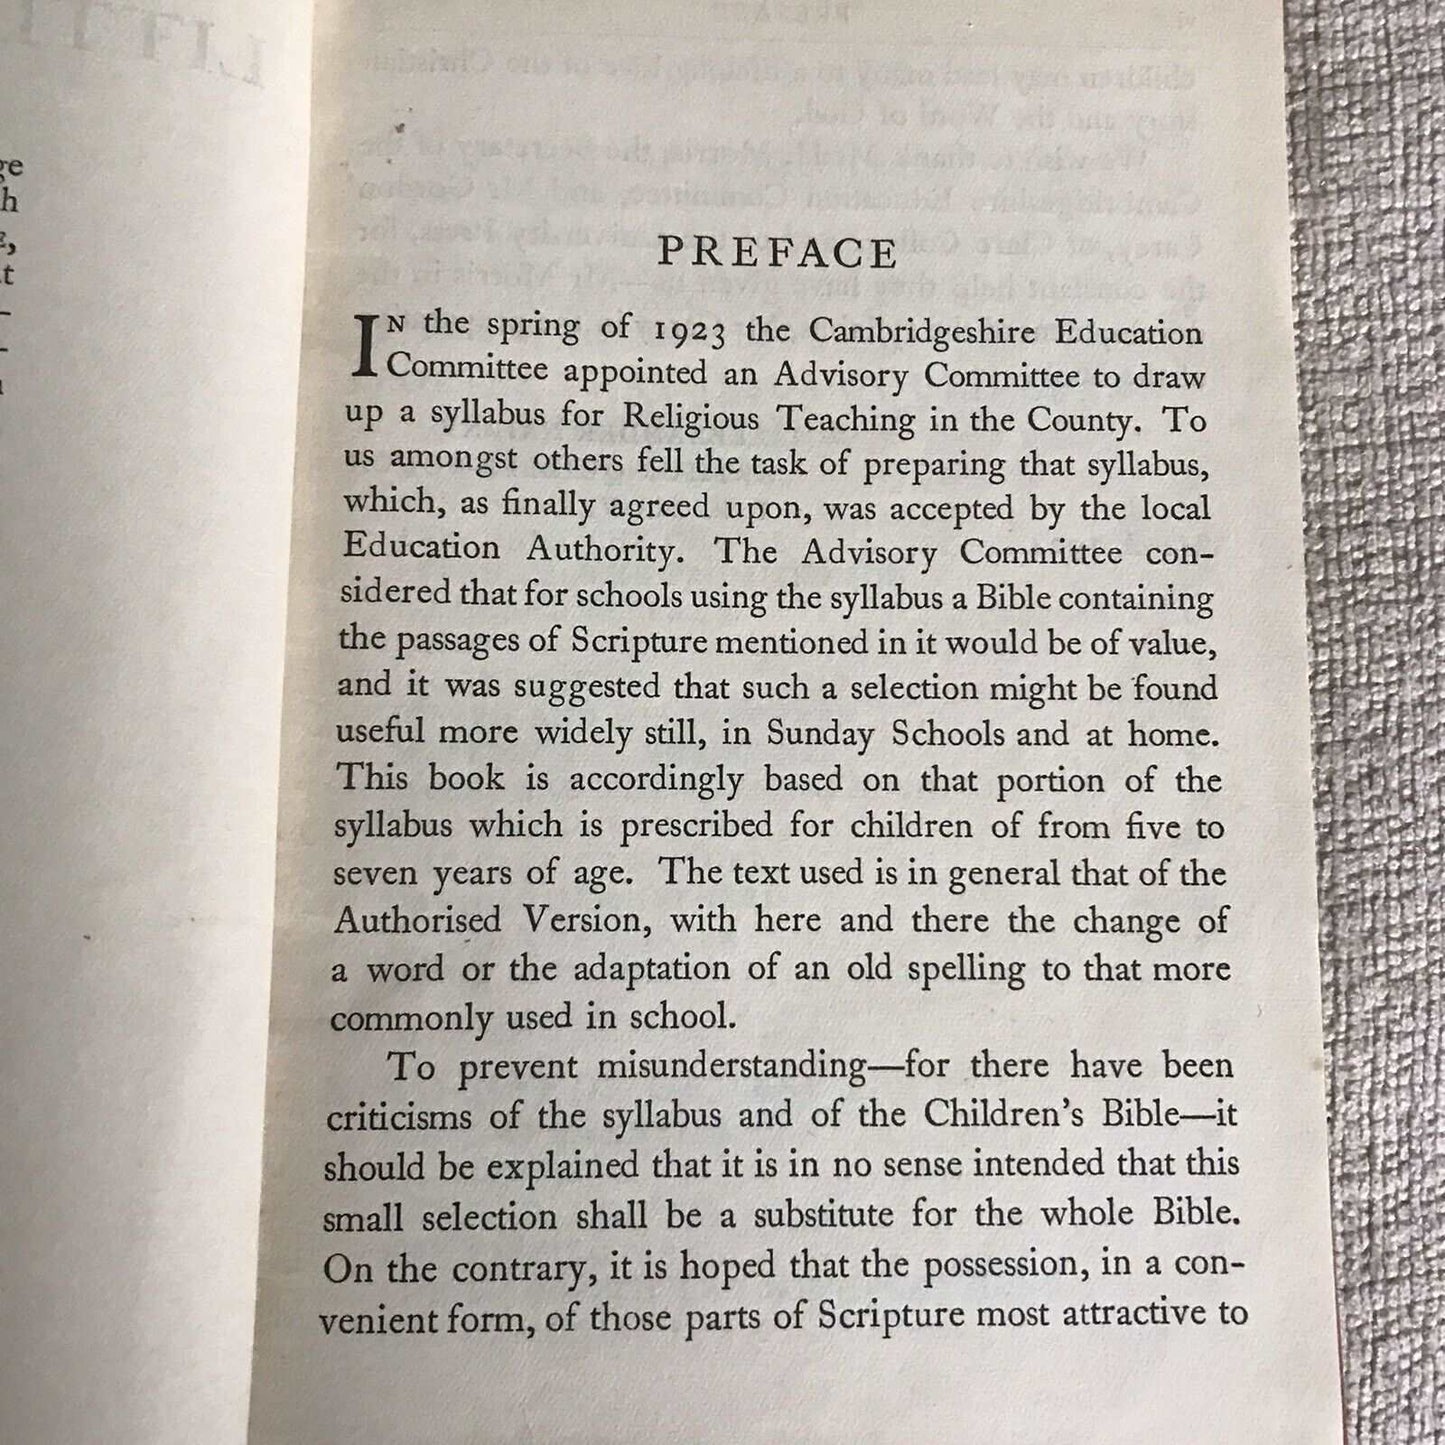 1924 The Little Children's Bible / Alexander Nairne. Cambridge University Press Honeyburn Books (UK)